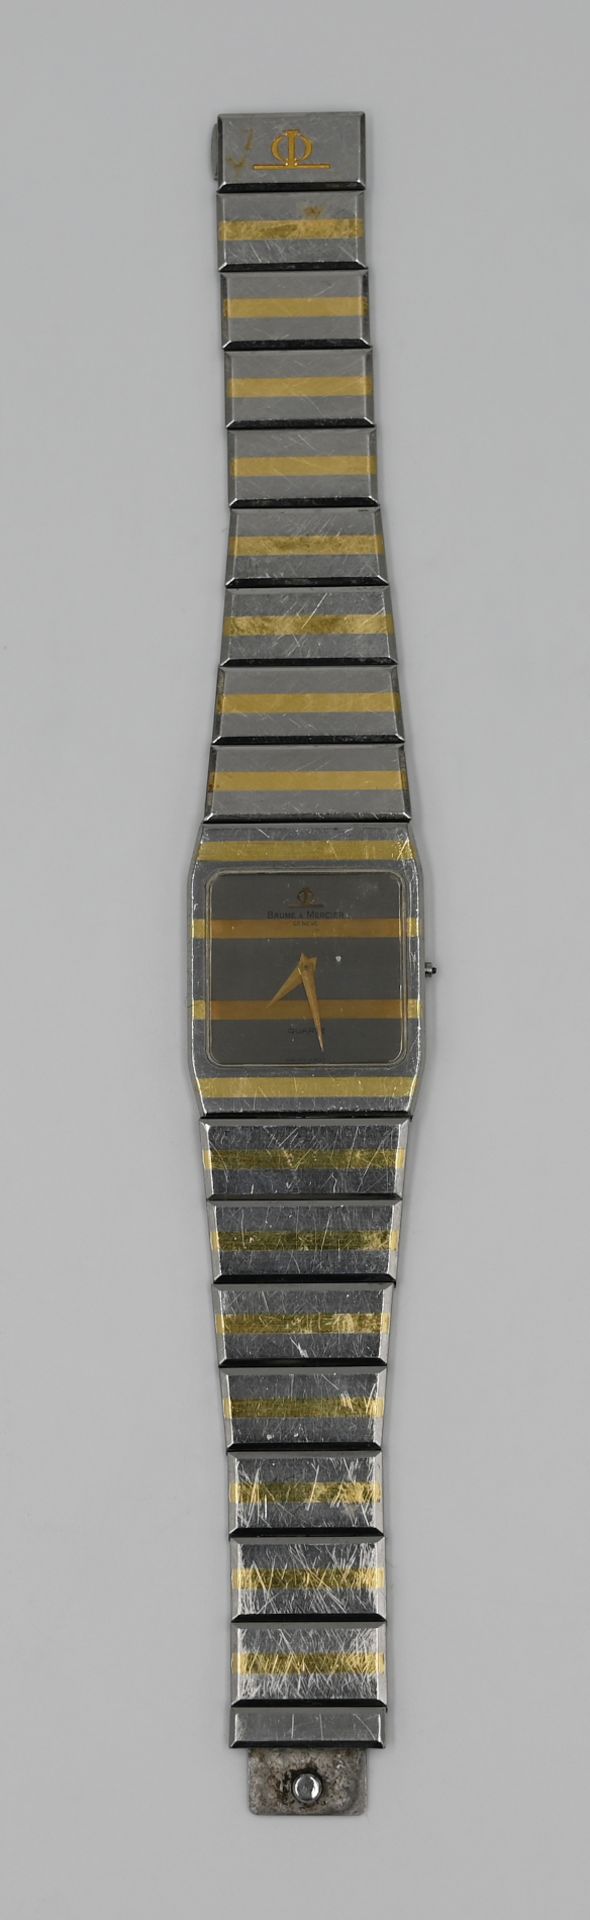 1 Armbanduhr BAUME & MERCIER, Quarz, Stahl, wohl z.T. GG, mit Ersatzgliedern, sowie einem weiteren B